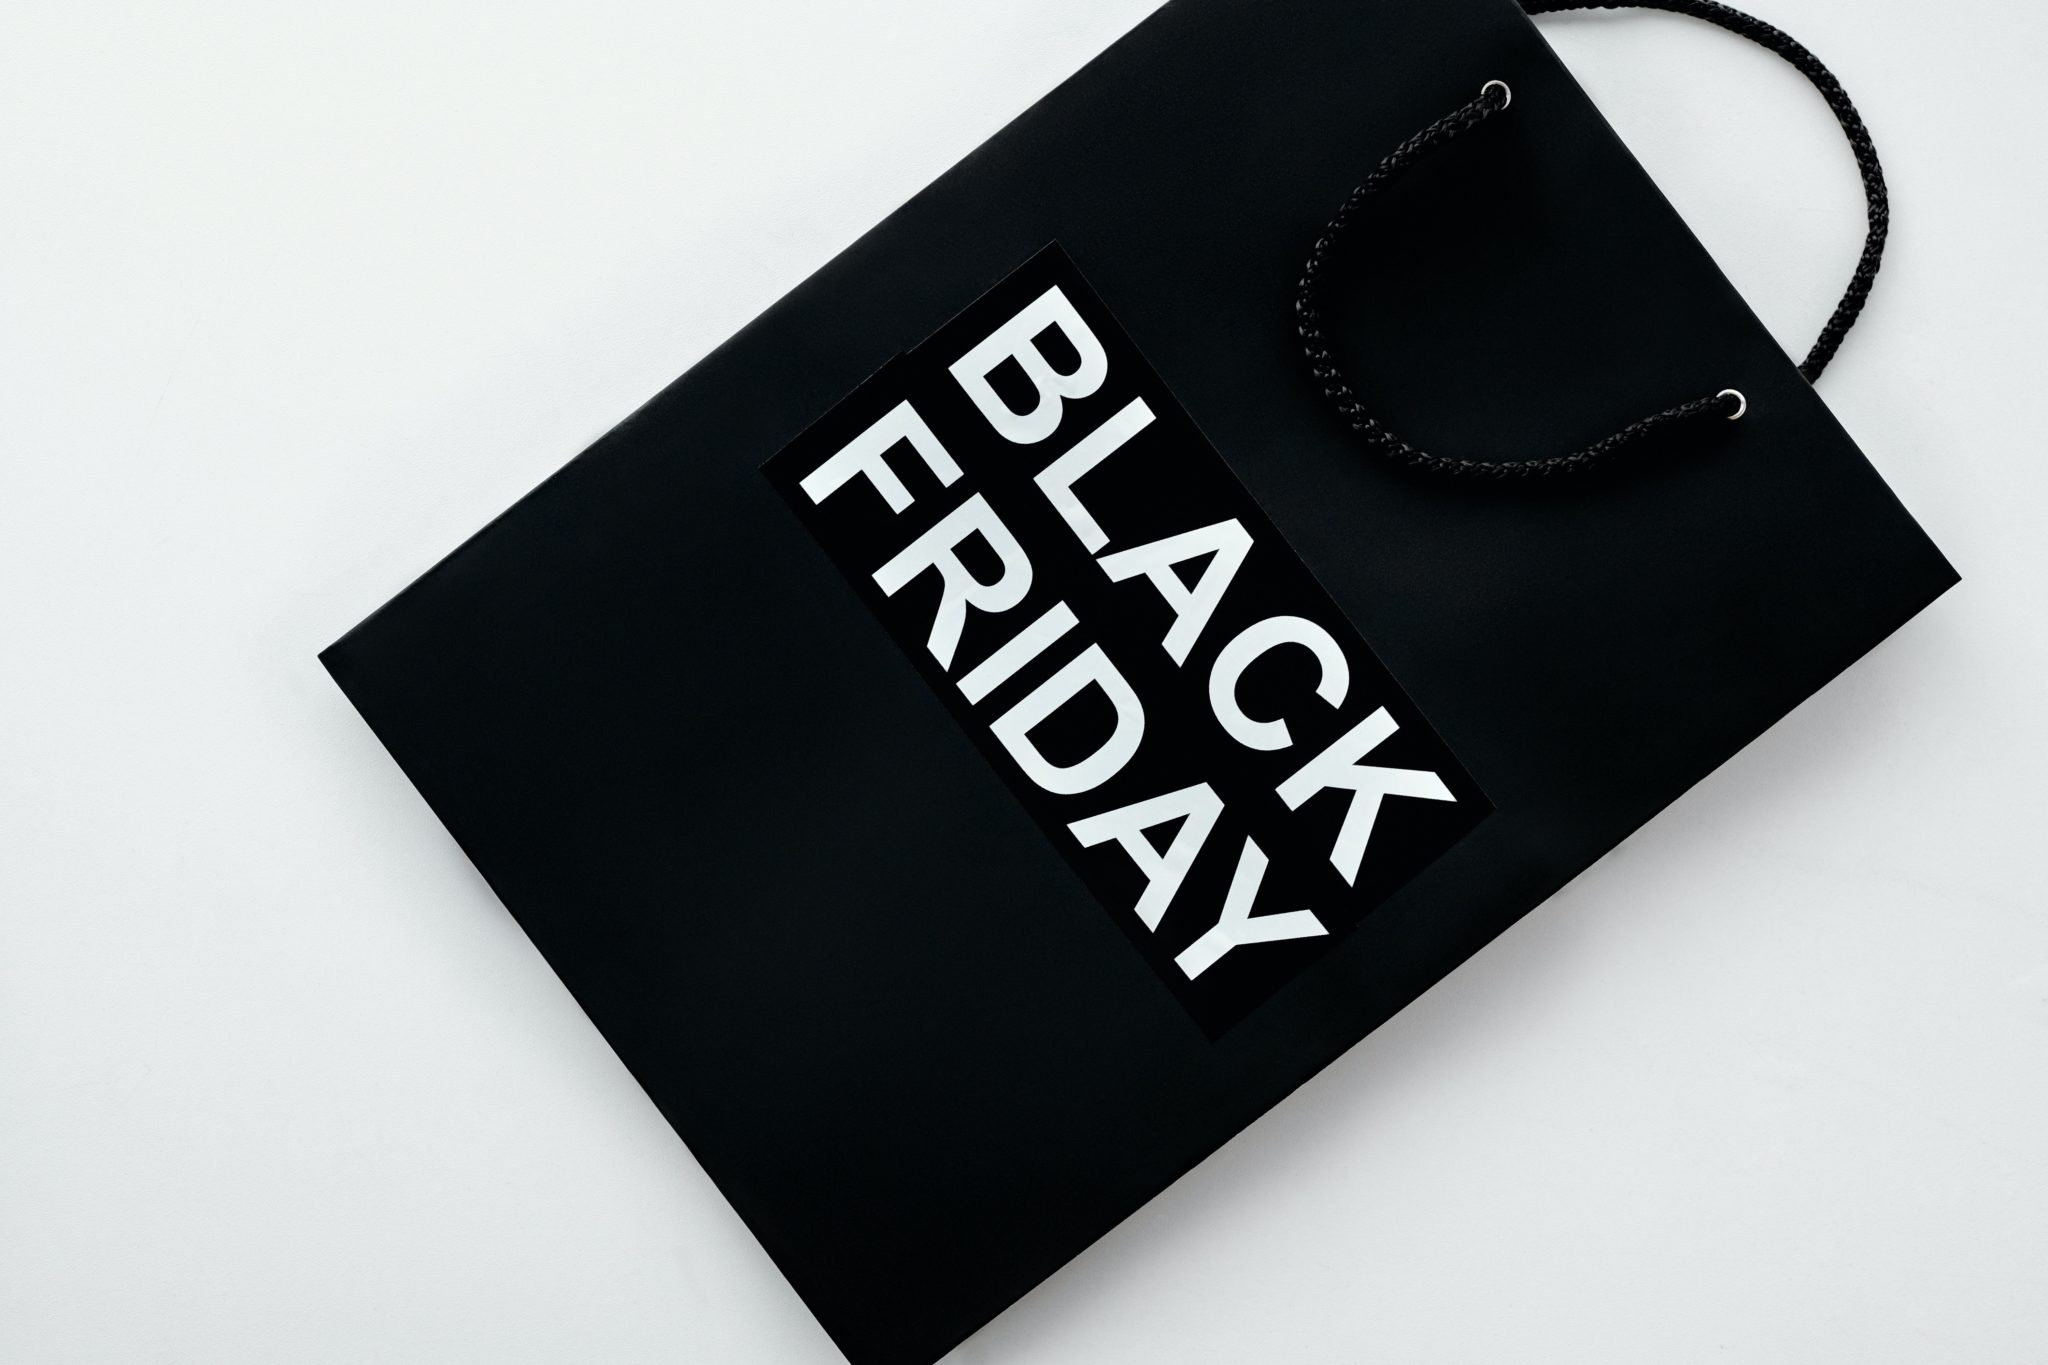 Erbjudande Black Friday, Black Week